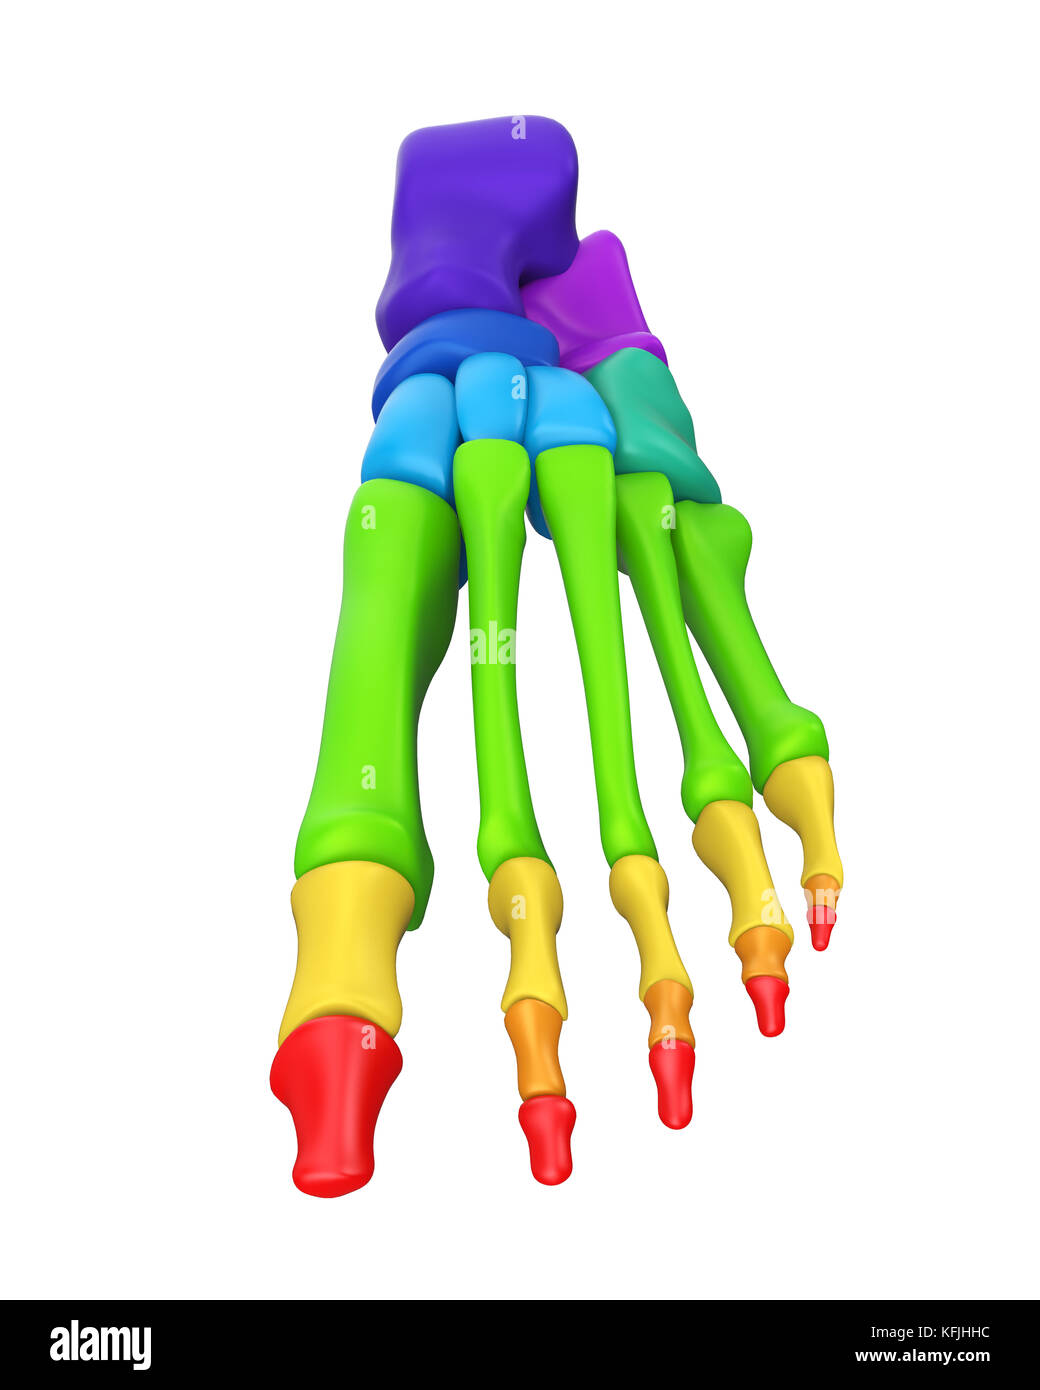 L'anatomie des os du pied isolé Banque D'Images